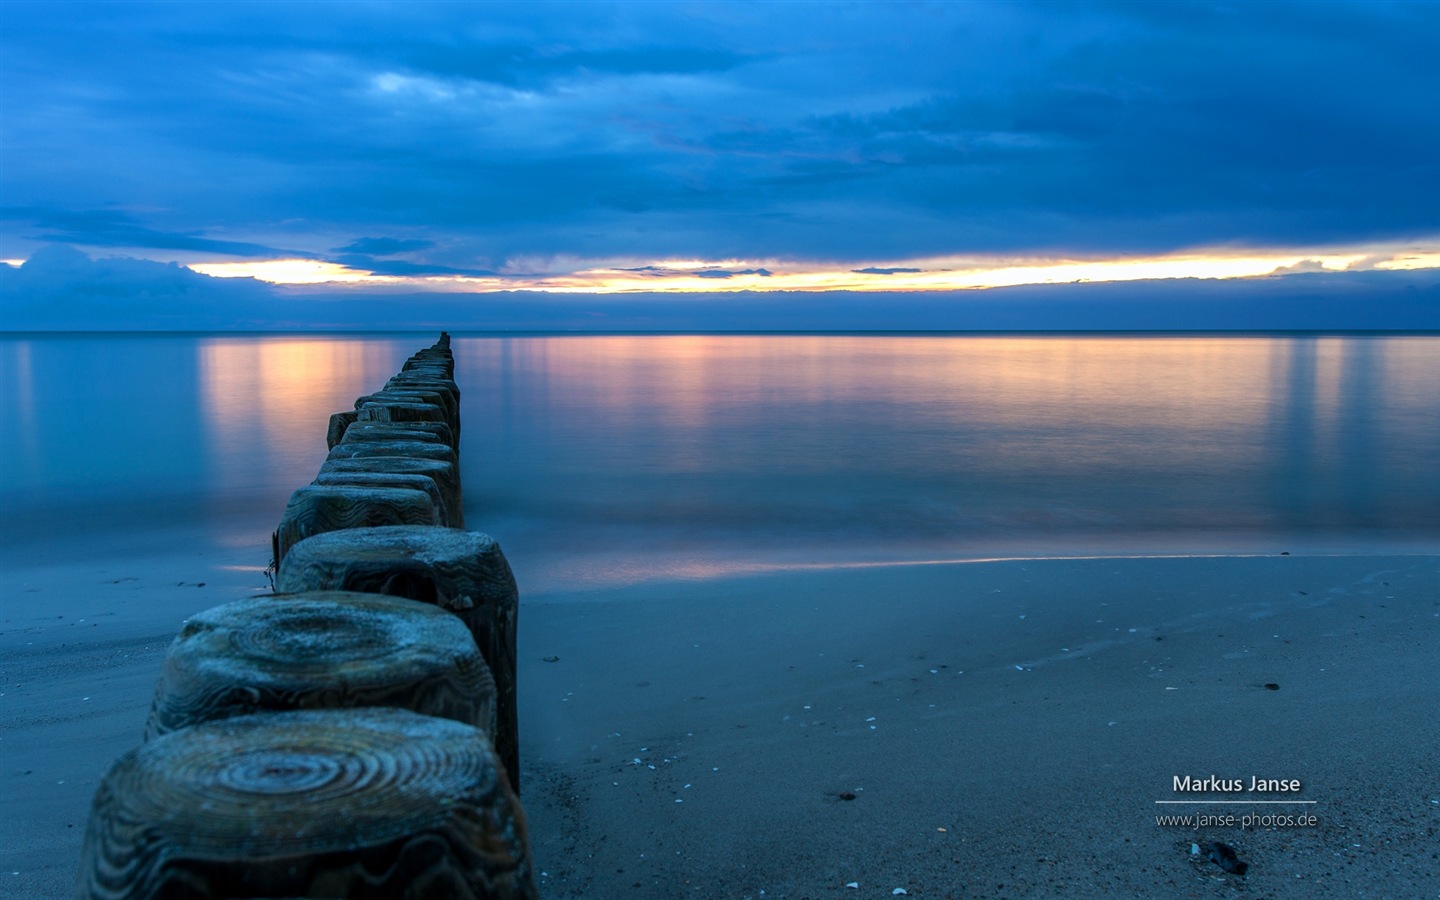 독일의 아름다운 해안 풍경, 윈도우 8의 HD 배경 화면 #10 - 1440x900